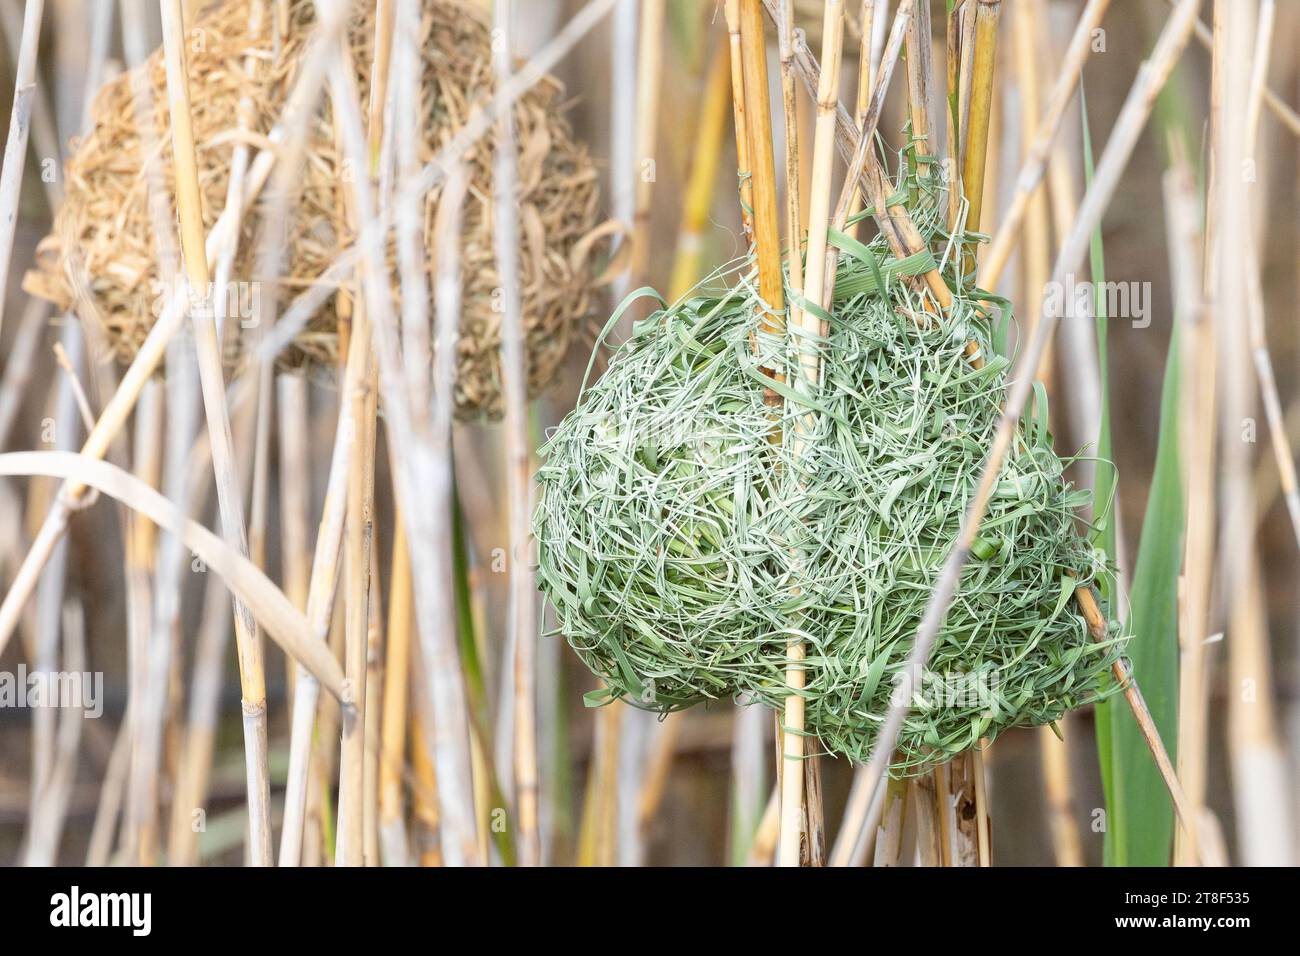 Tessitore del Capo intrecciato (Ploceus capensis) nido di erba secca in un letto di canne sopra l'acqua Foto Stock